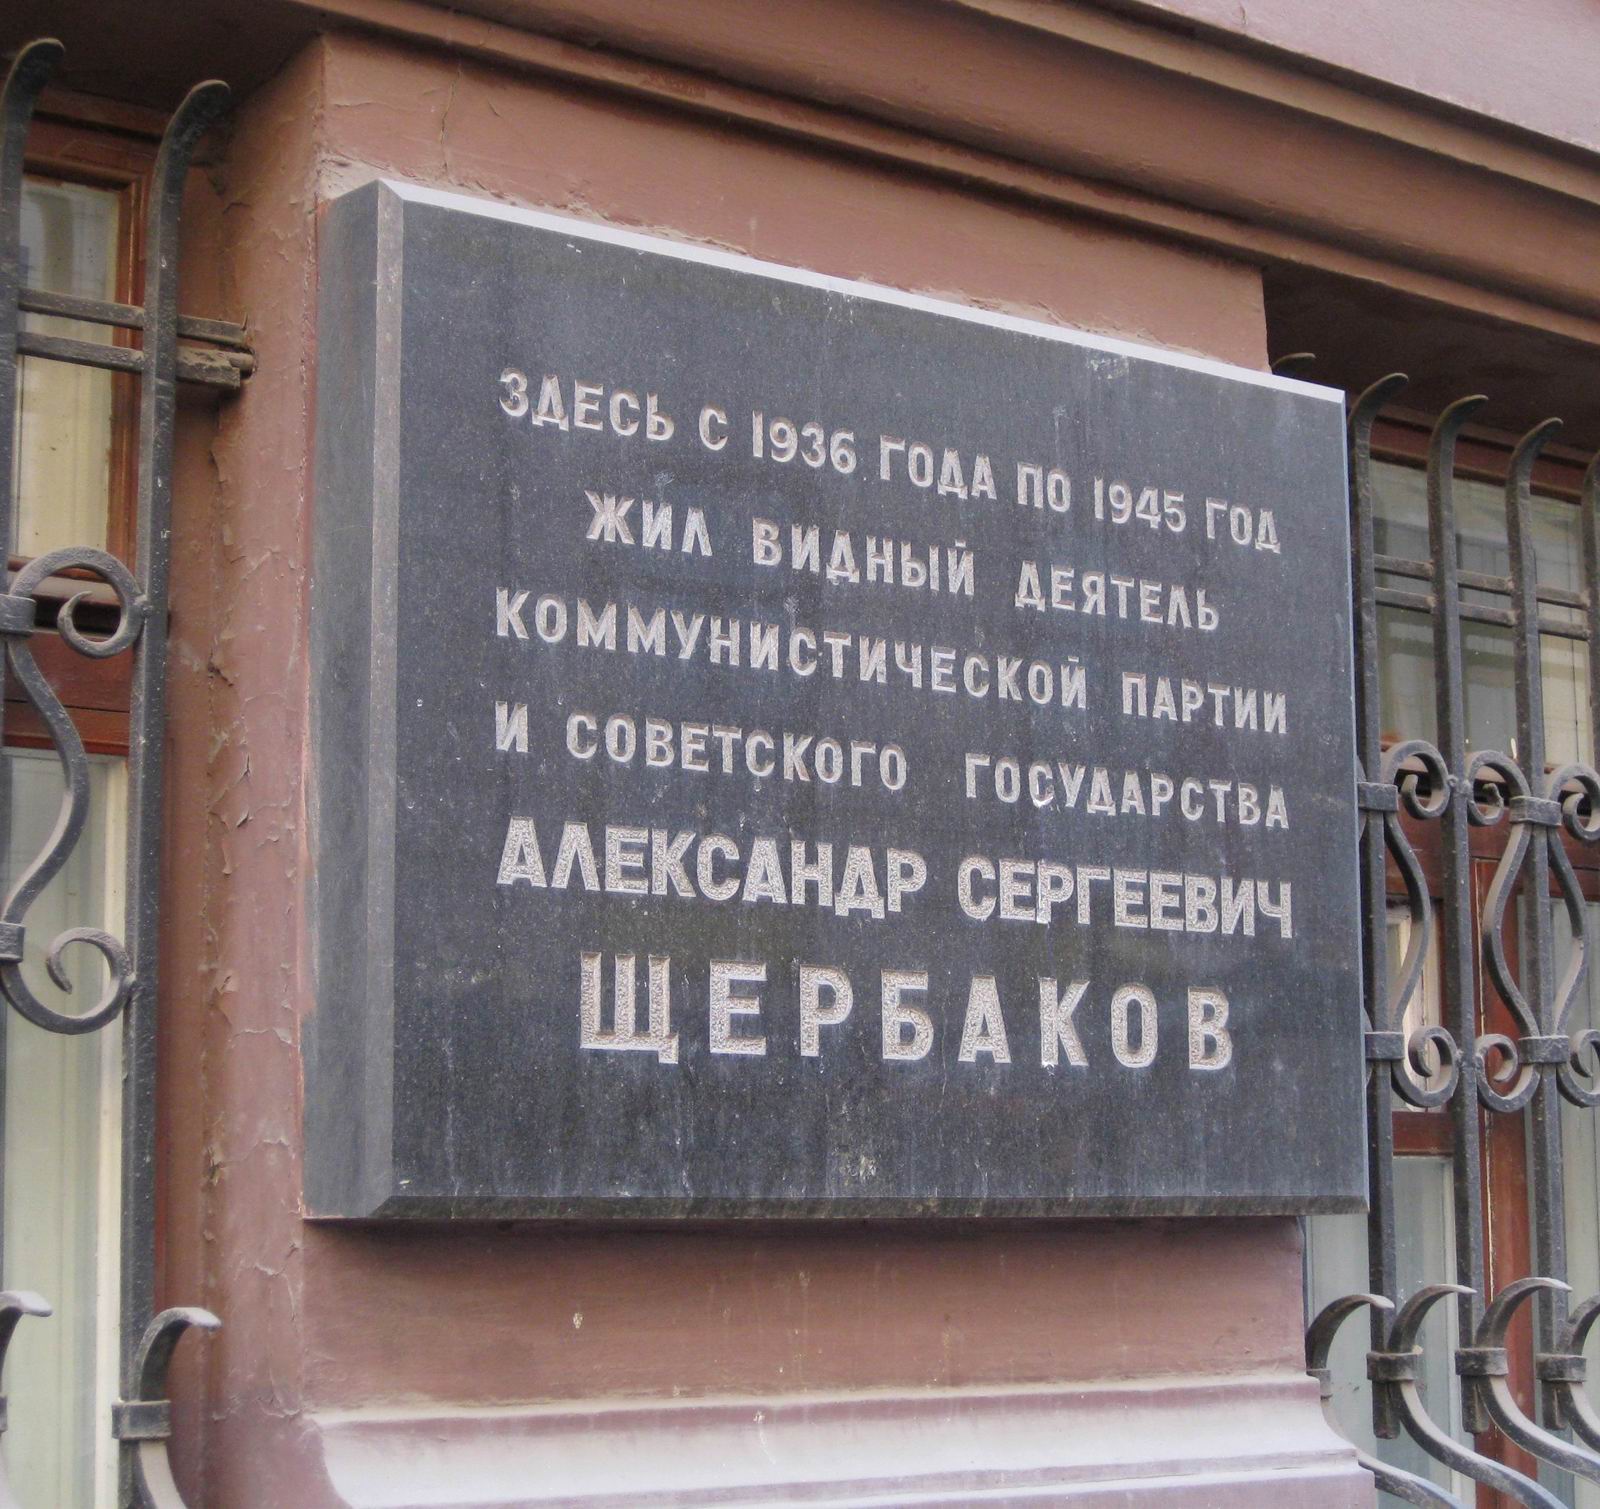 Мемориальная доска Щербакову А.С. (1901–1945), арх. Г.А.Мурадов, в Романовом переулке, дом 3, открыта 25.9.1973.